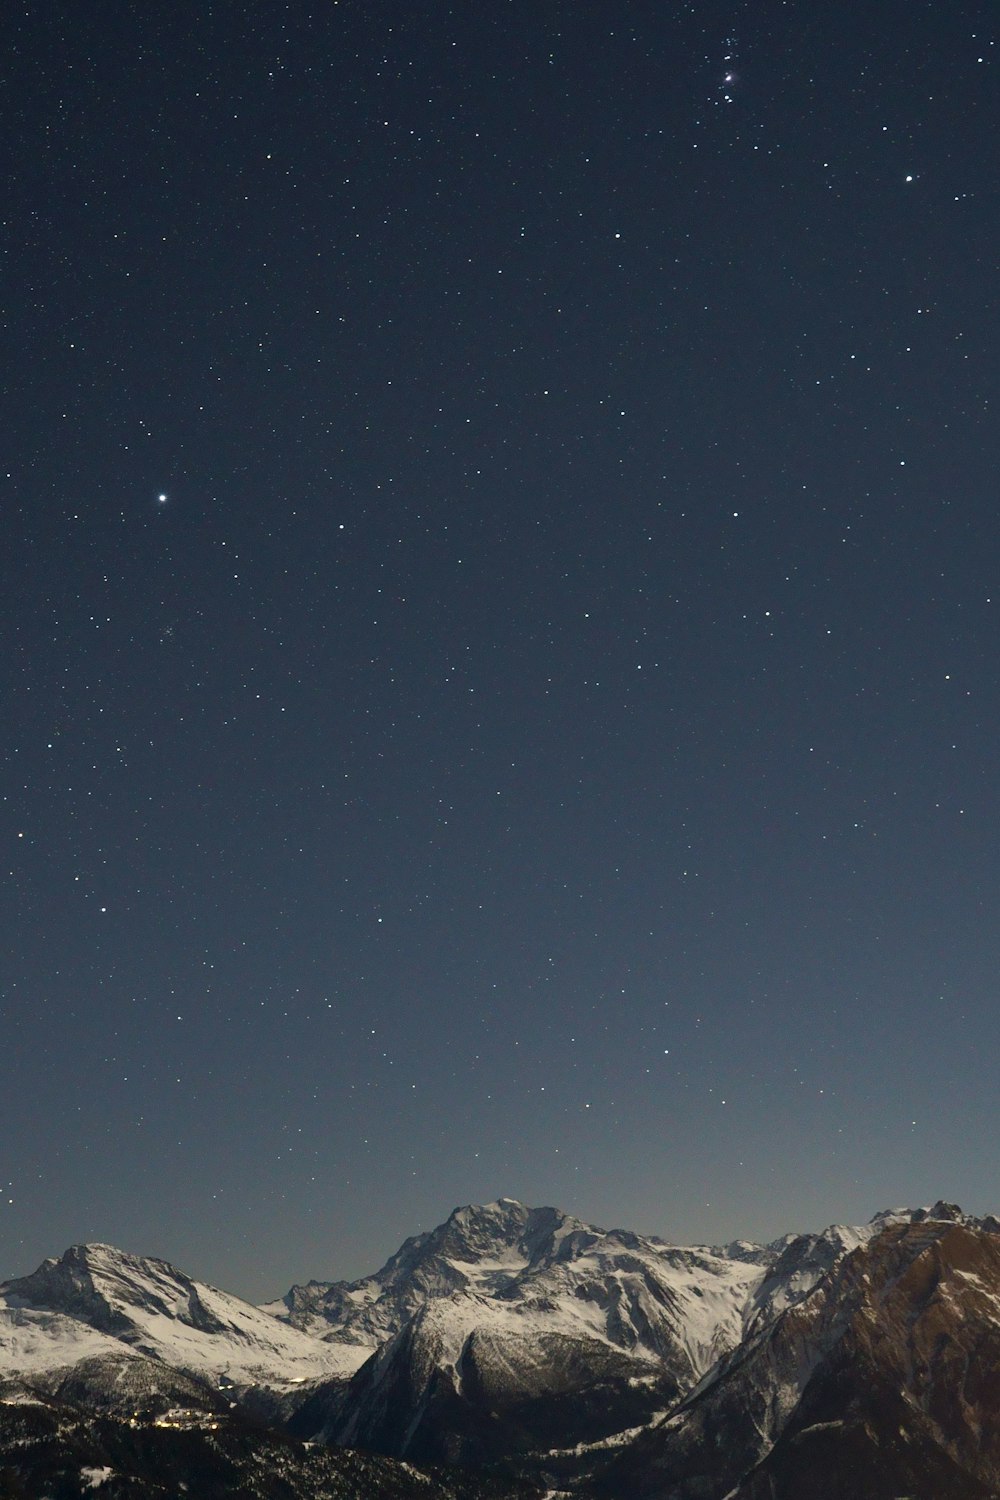 El cielo nocturno sobre una cadena montañosa con estrellas en el cielo